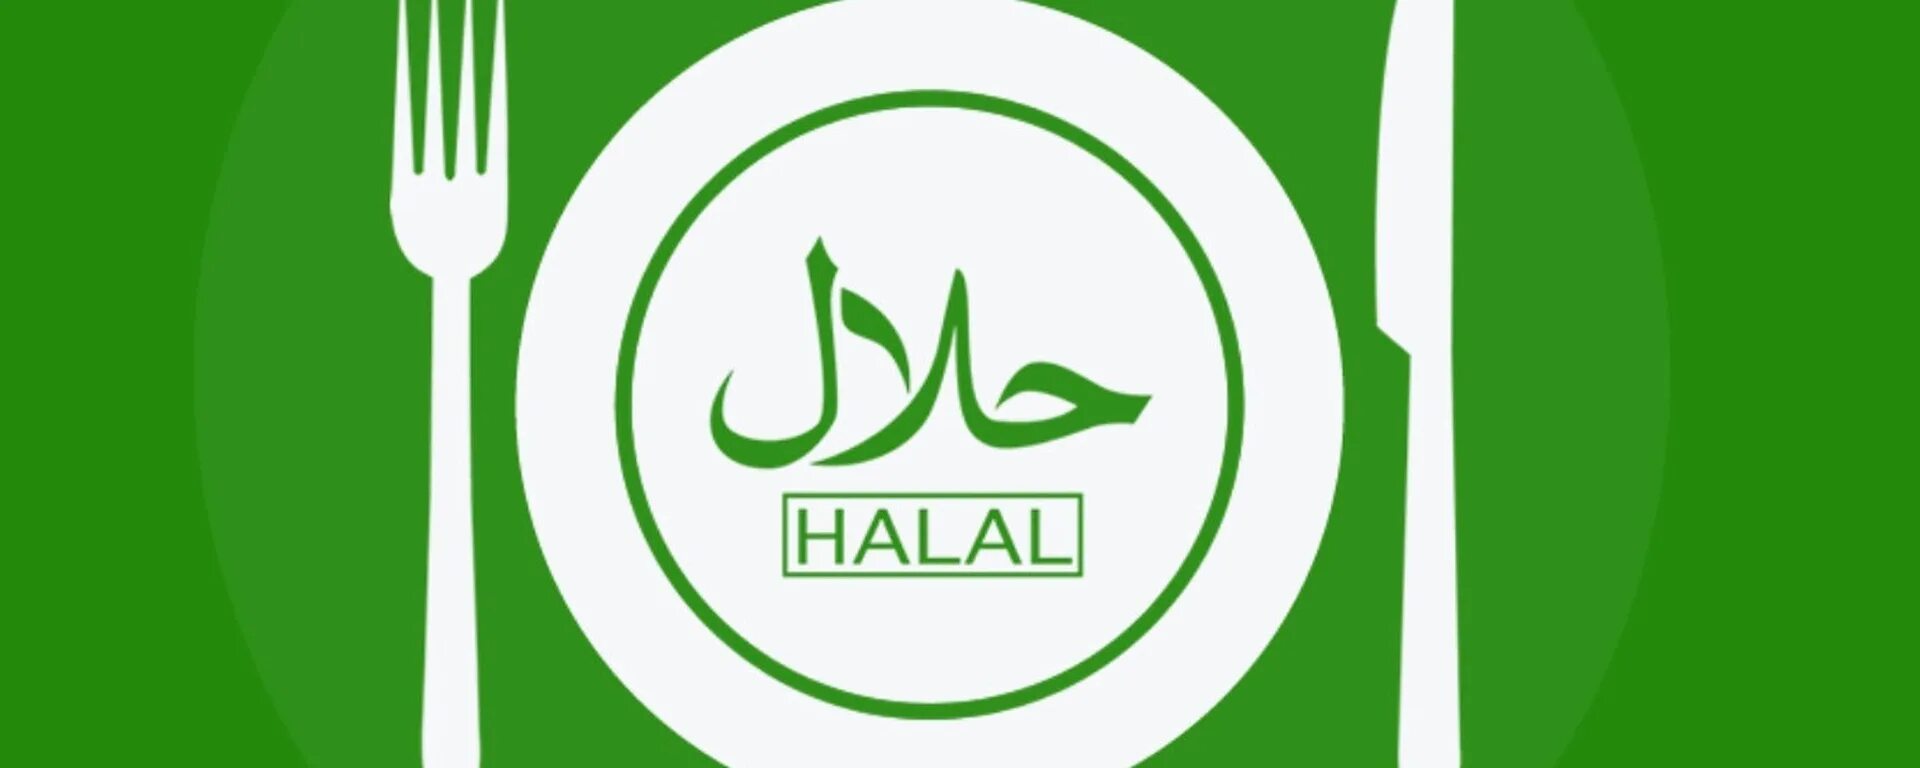 Нижнекамск халяль. Халяль. Эмблема Халяль. Логотип кафе Халяль. Значок Халяль зеленый.